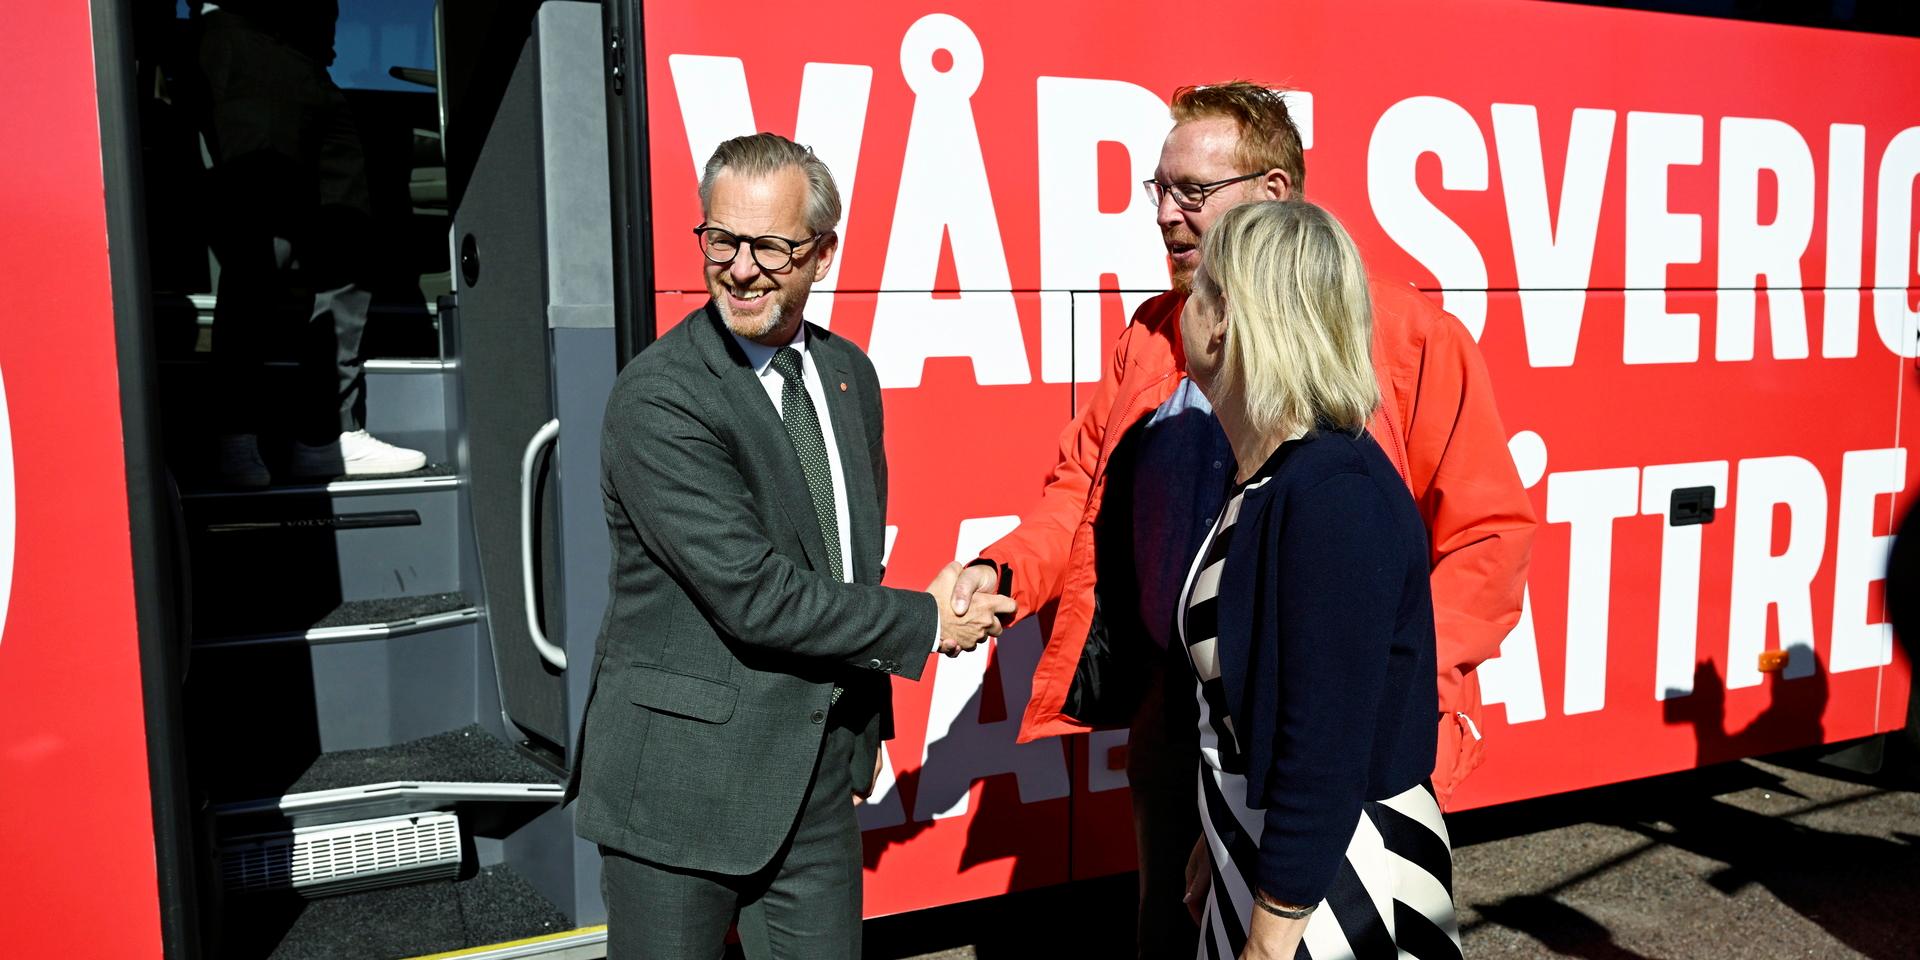 Finansminister Mikael Damberg och statsminister Magdalena Andersson tas emot av Peter Kärnström, ordförande för Socialdemokraterna i Gävle, under besök i Gävle.